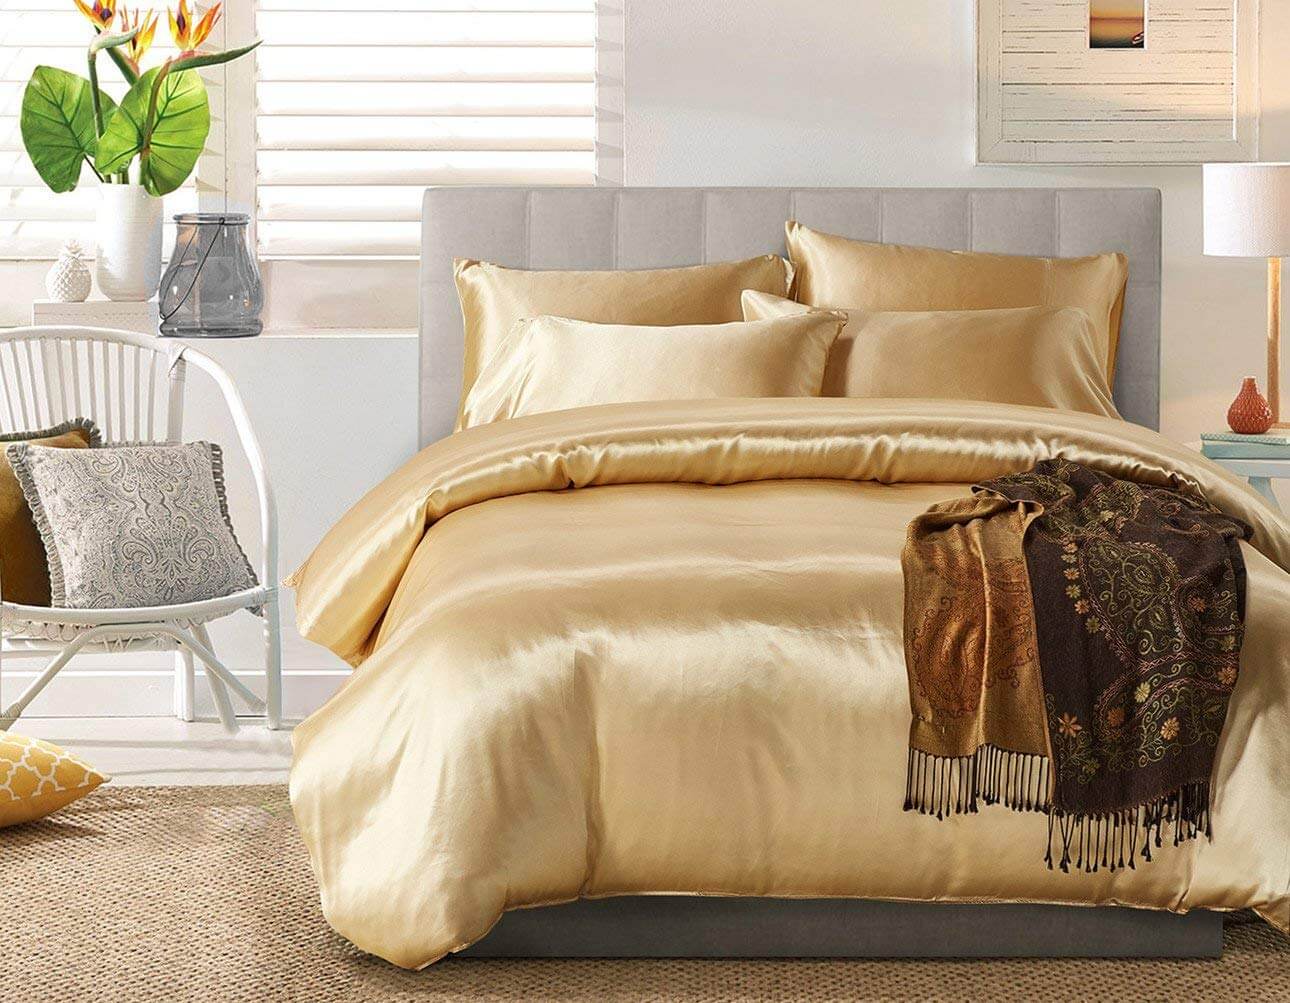 Drap giường phi lụa màu vàng đồng